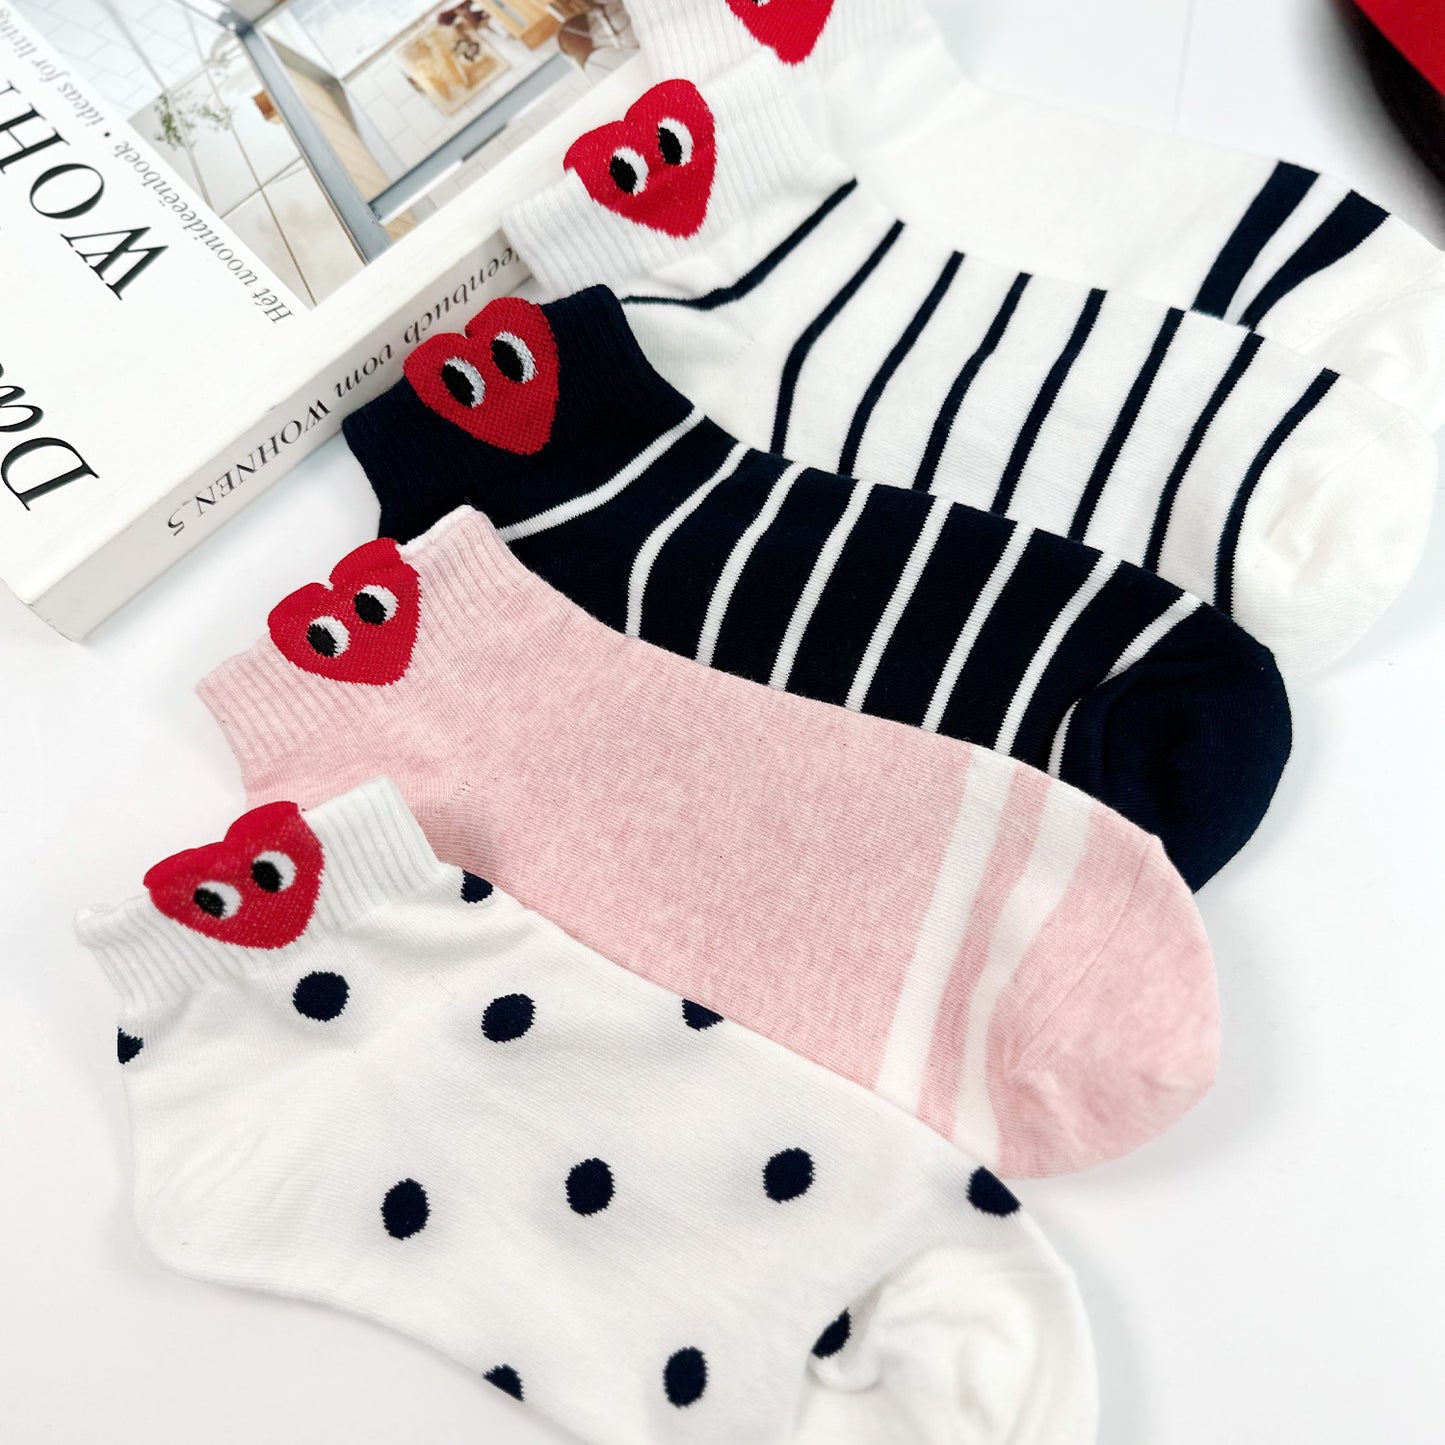 Women's Ankle Falling In Love Socks